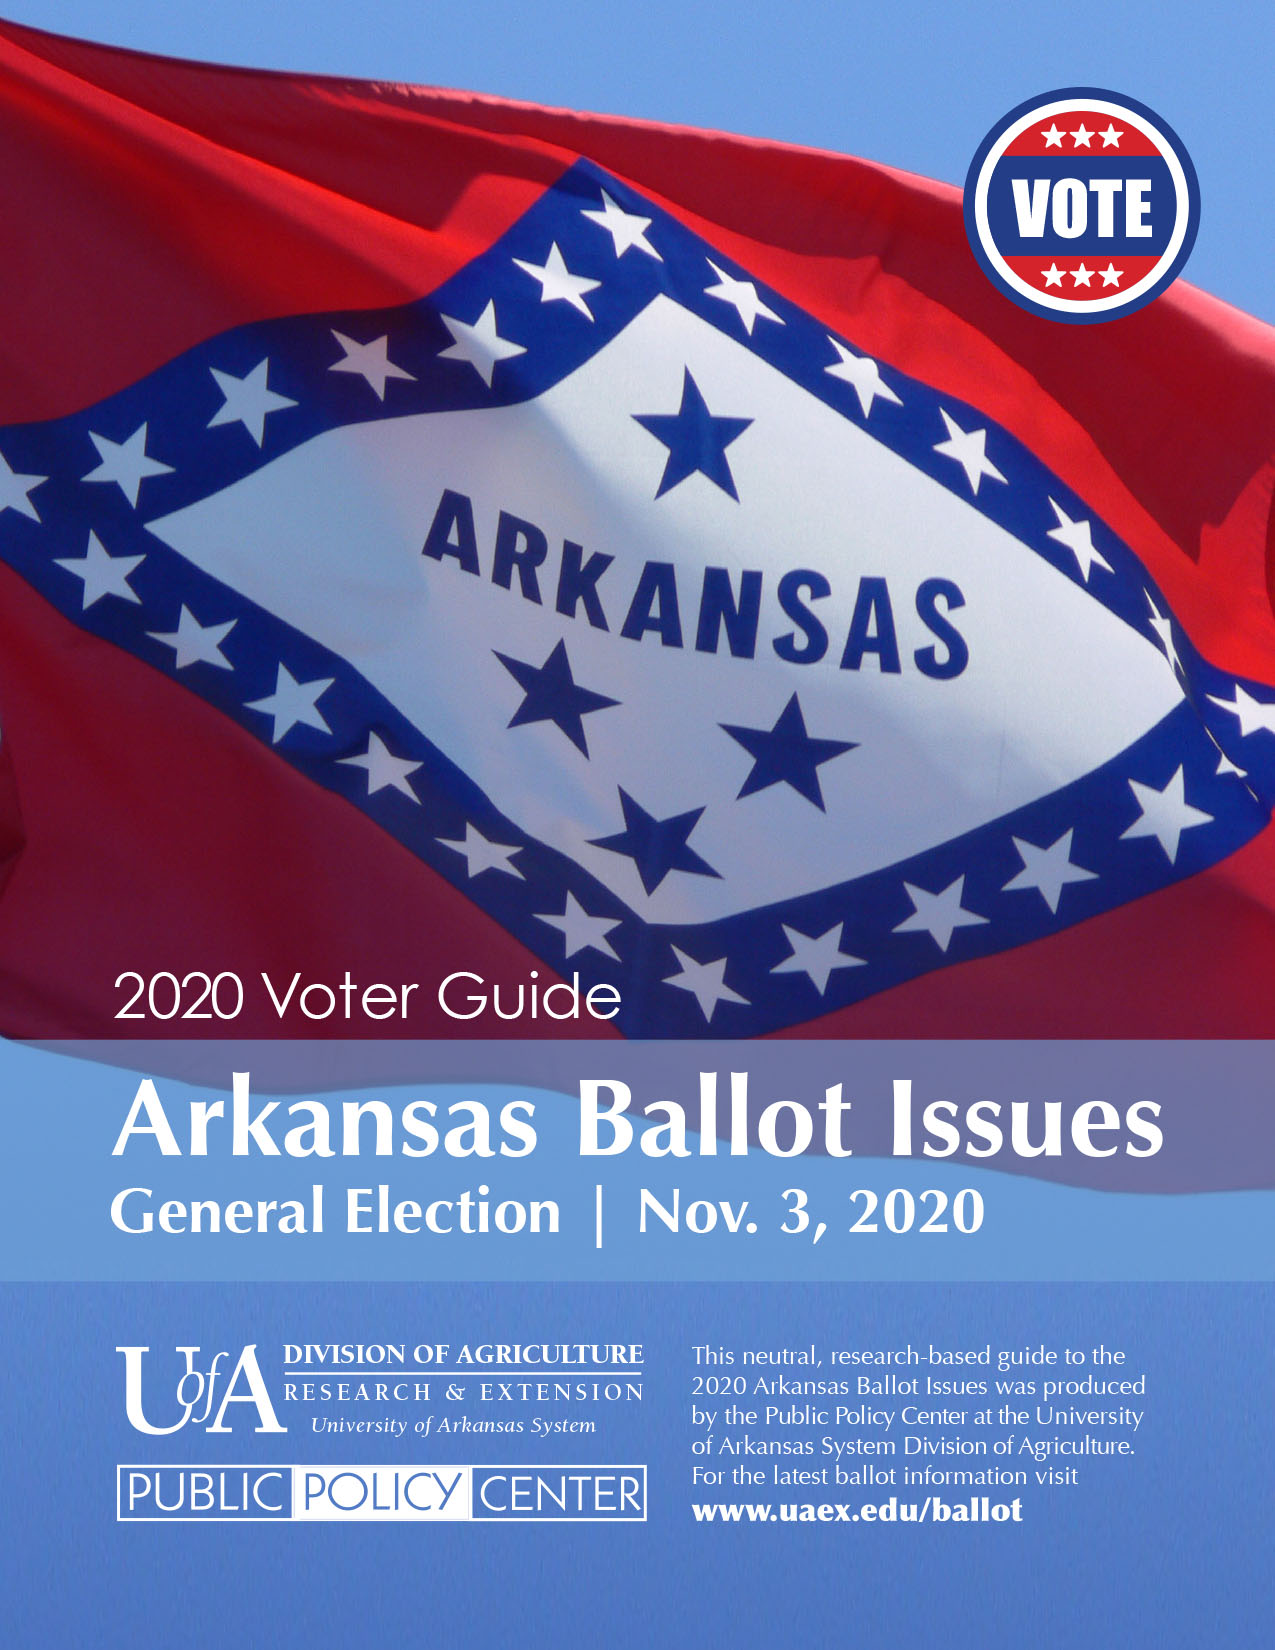 Cover of 2020 Arkansas Ballot Issue Voter Guide